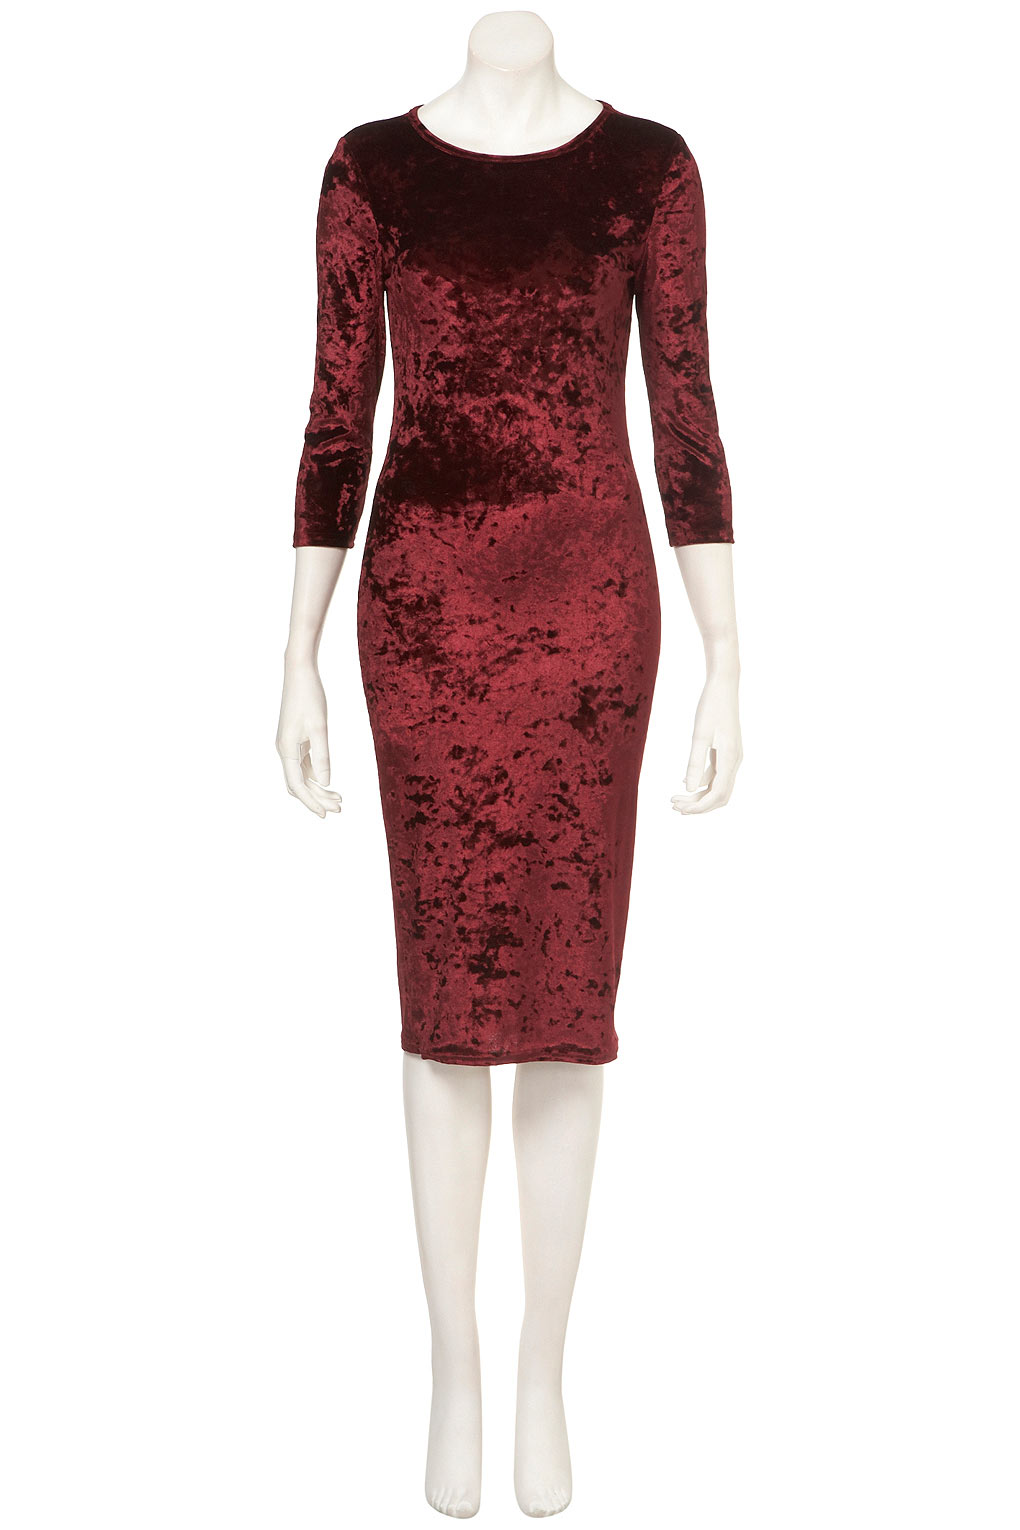 burgundy crushed velvet dress